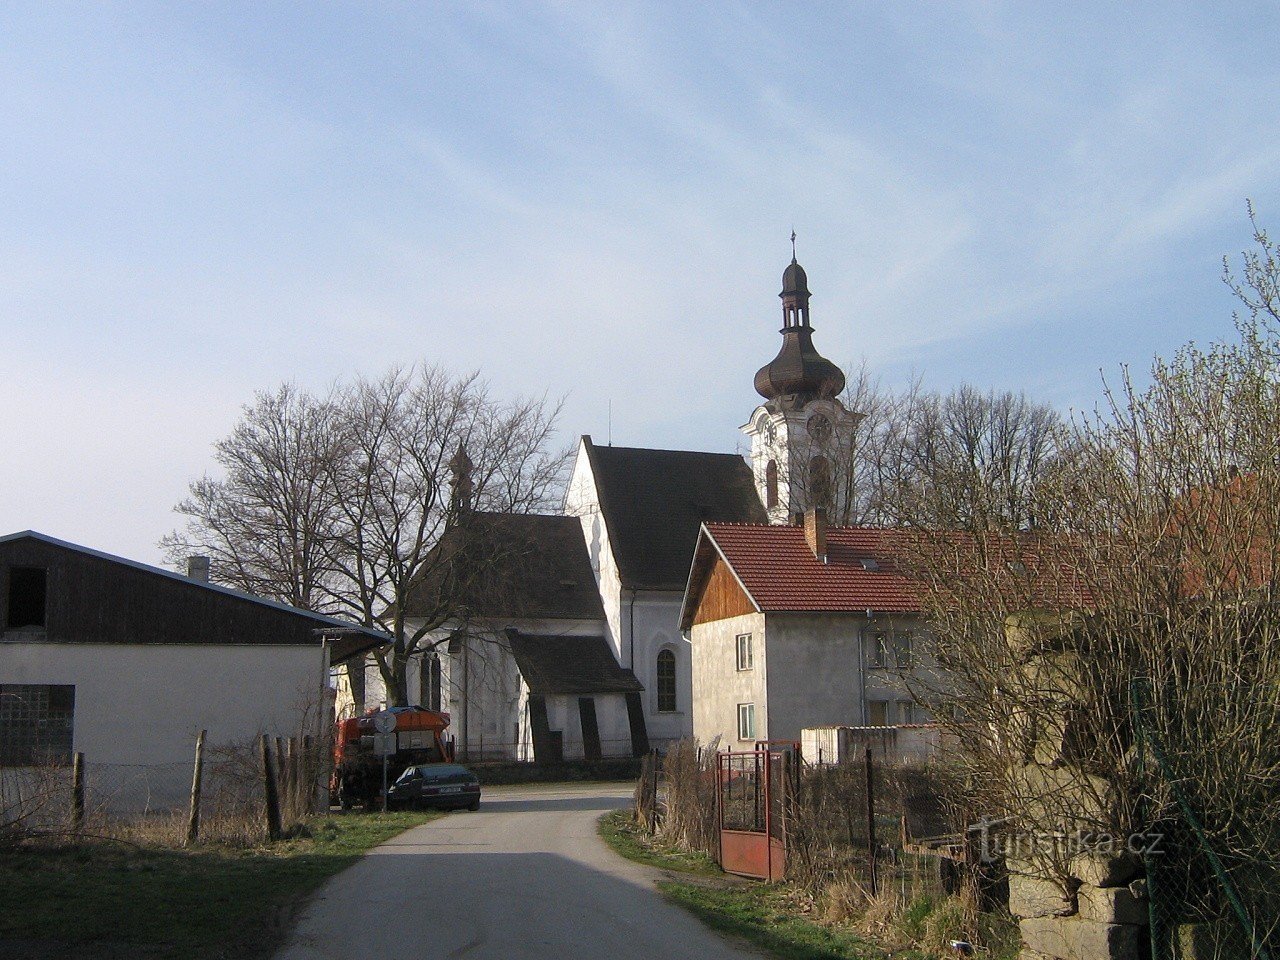 templom Szent Michael a Horní Dvořište-ben